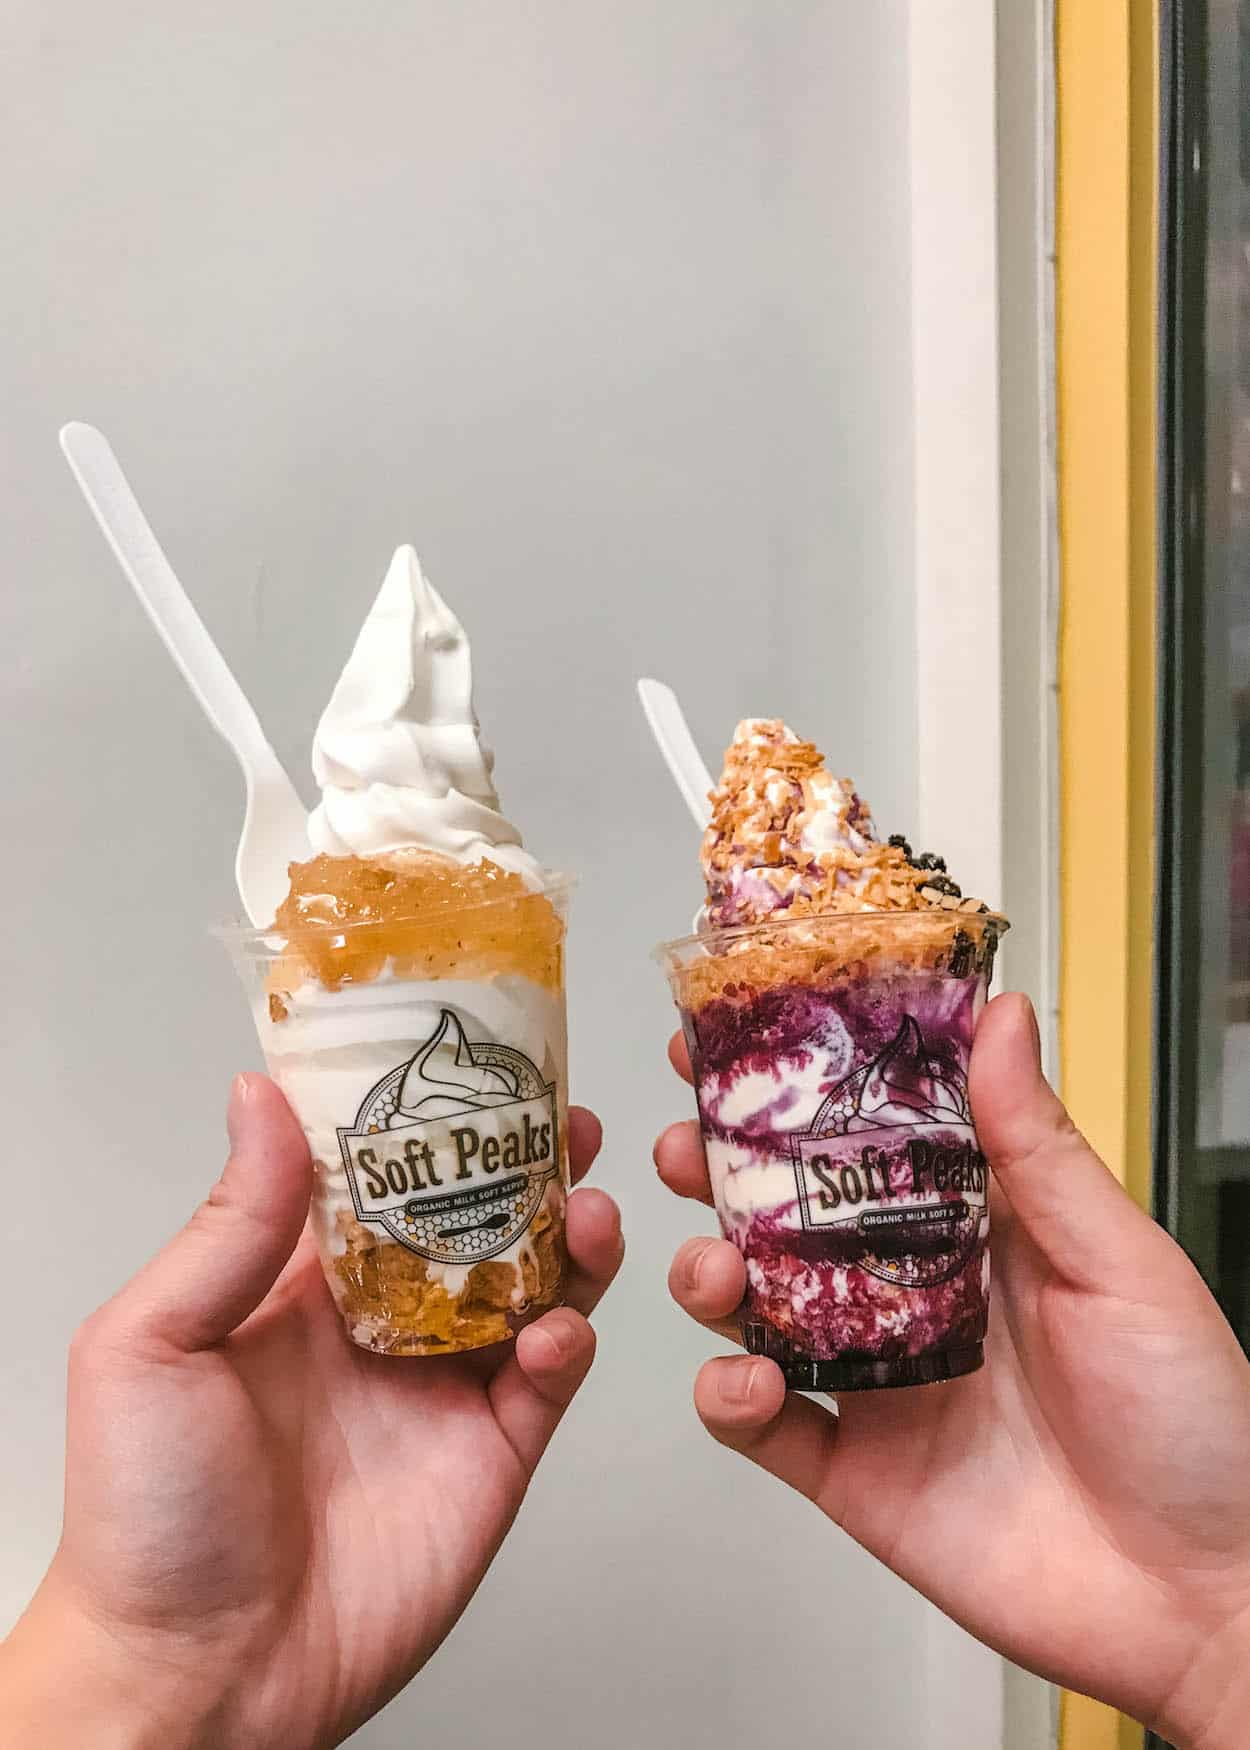 Enjoy ice cream at Soft Peaks in Gastown